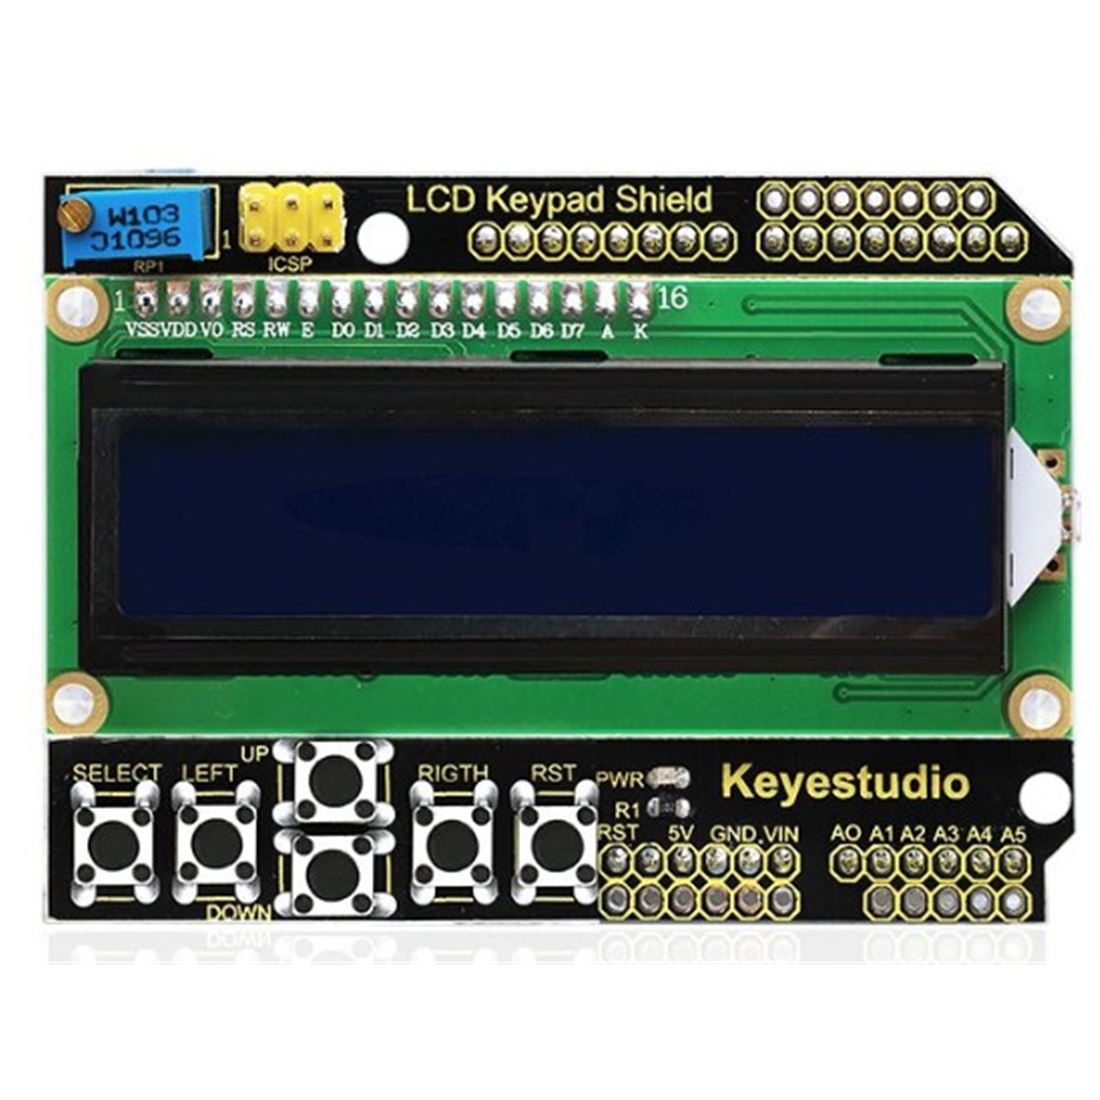 Keyestudio Shield expansión con pantalla LCD 1602 y 6 botones